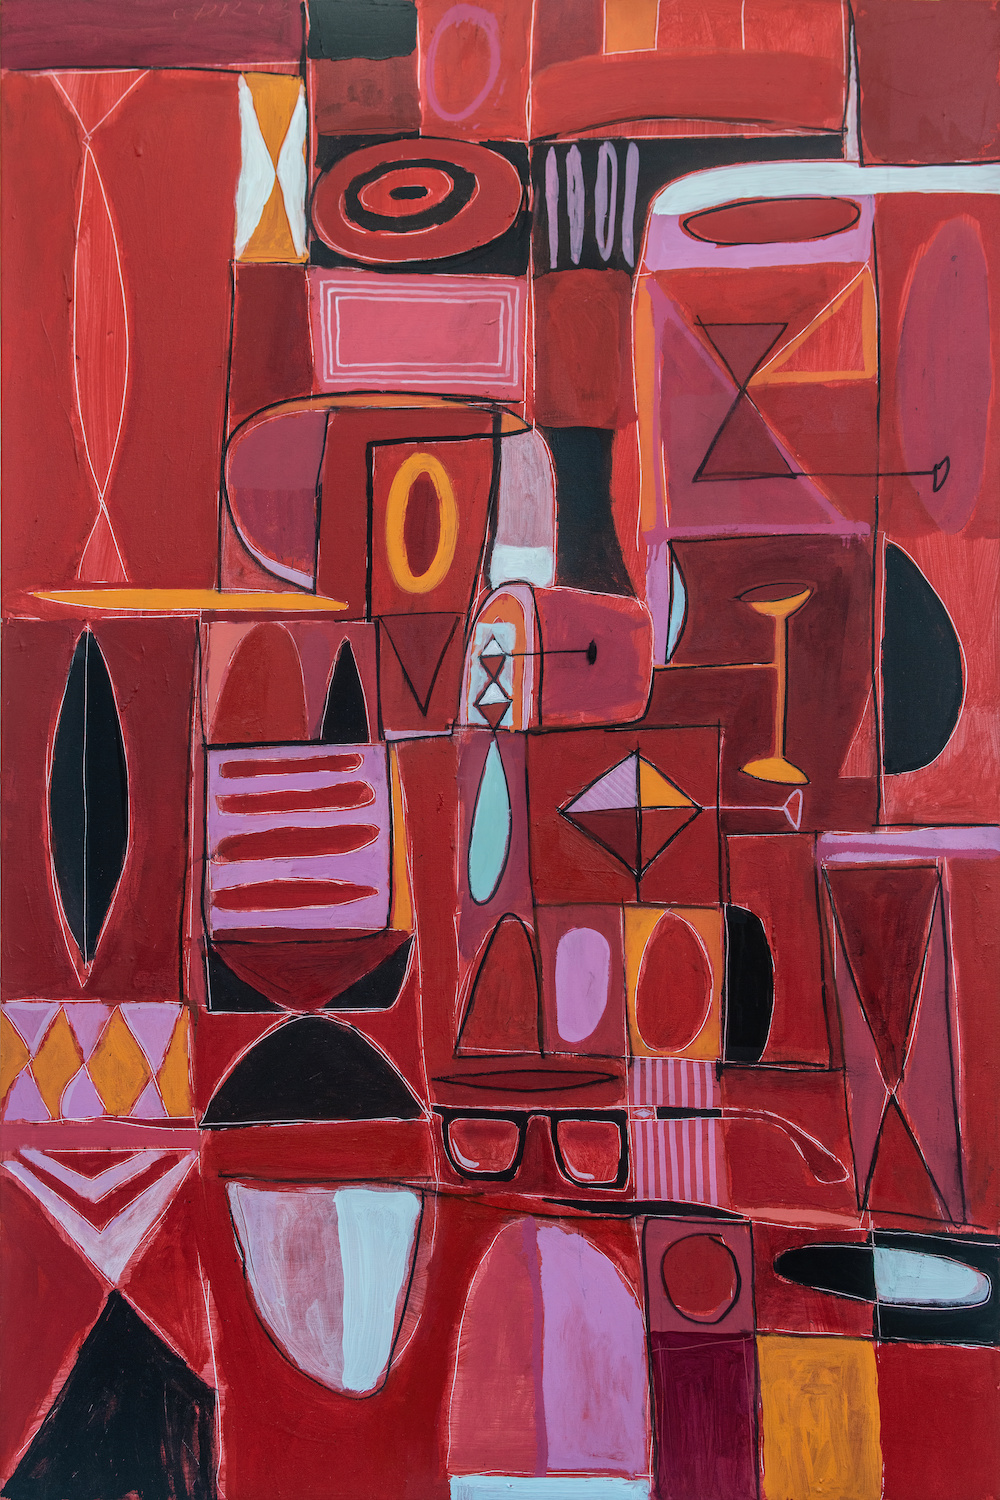 Une peinture abstraite de formes géométriques dans des tons rouges, noirs et orange.